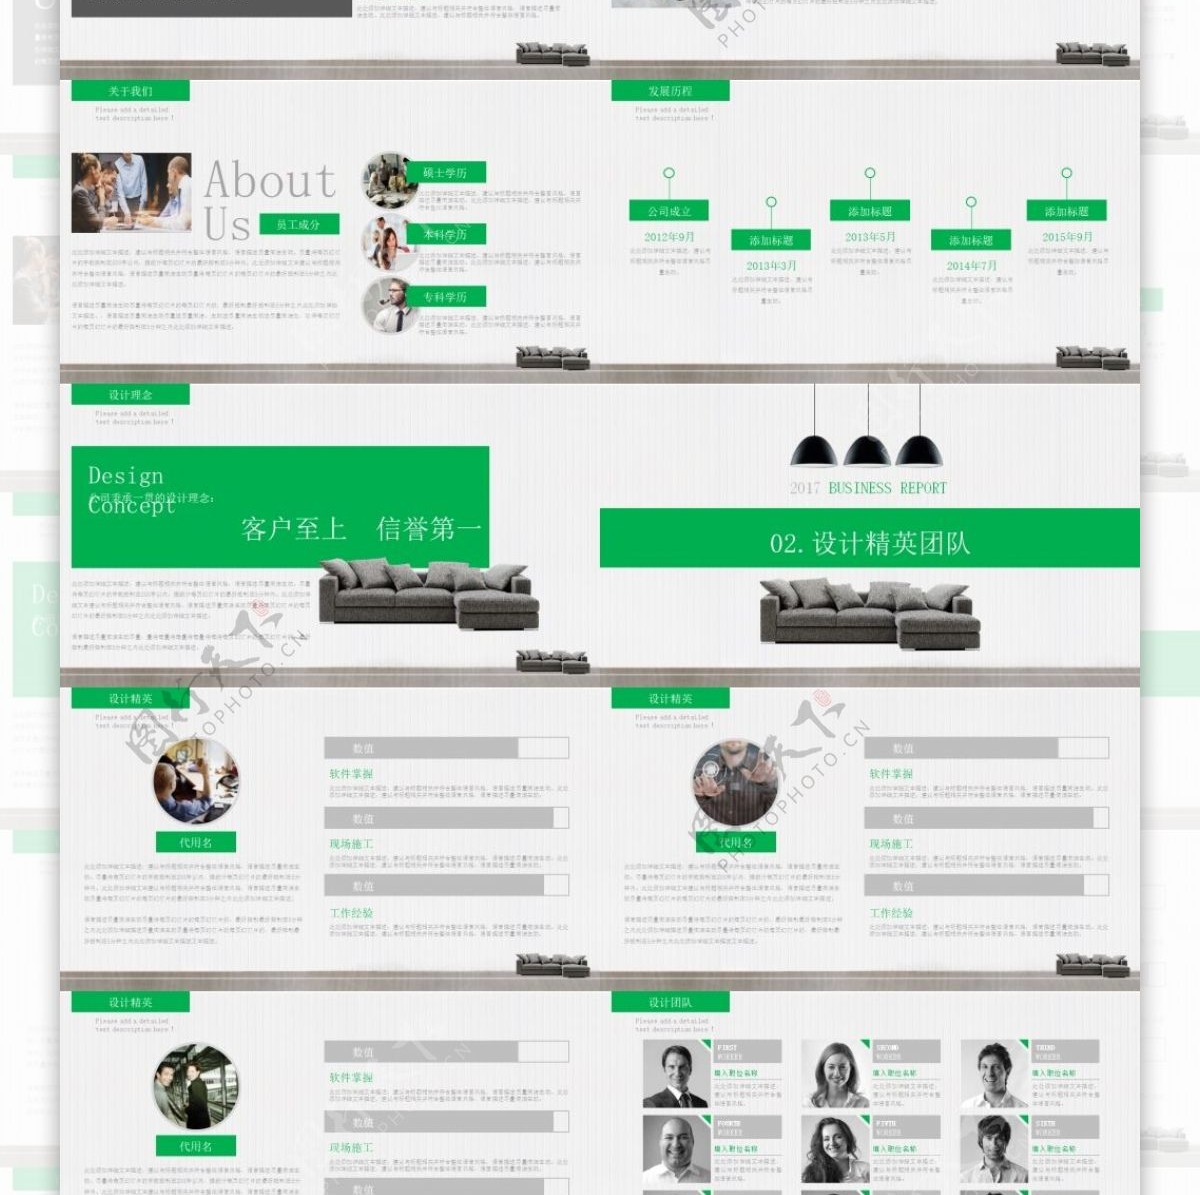 绿色小清新简约装饰公司介绍宣传PPT模板